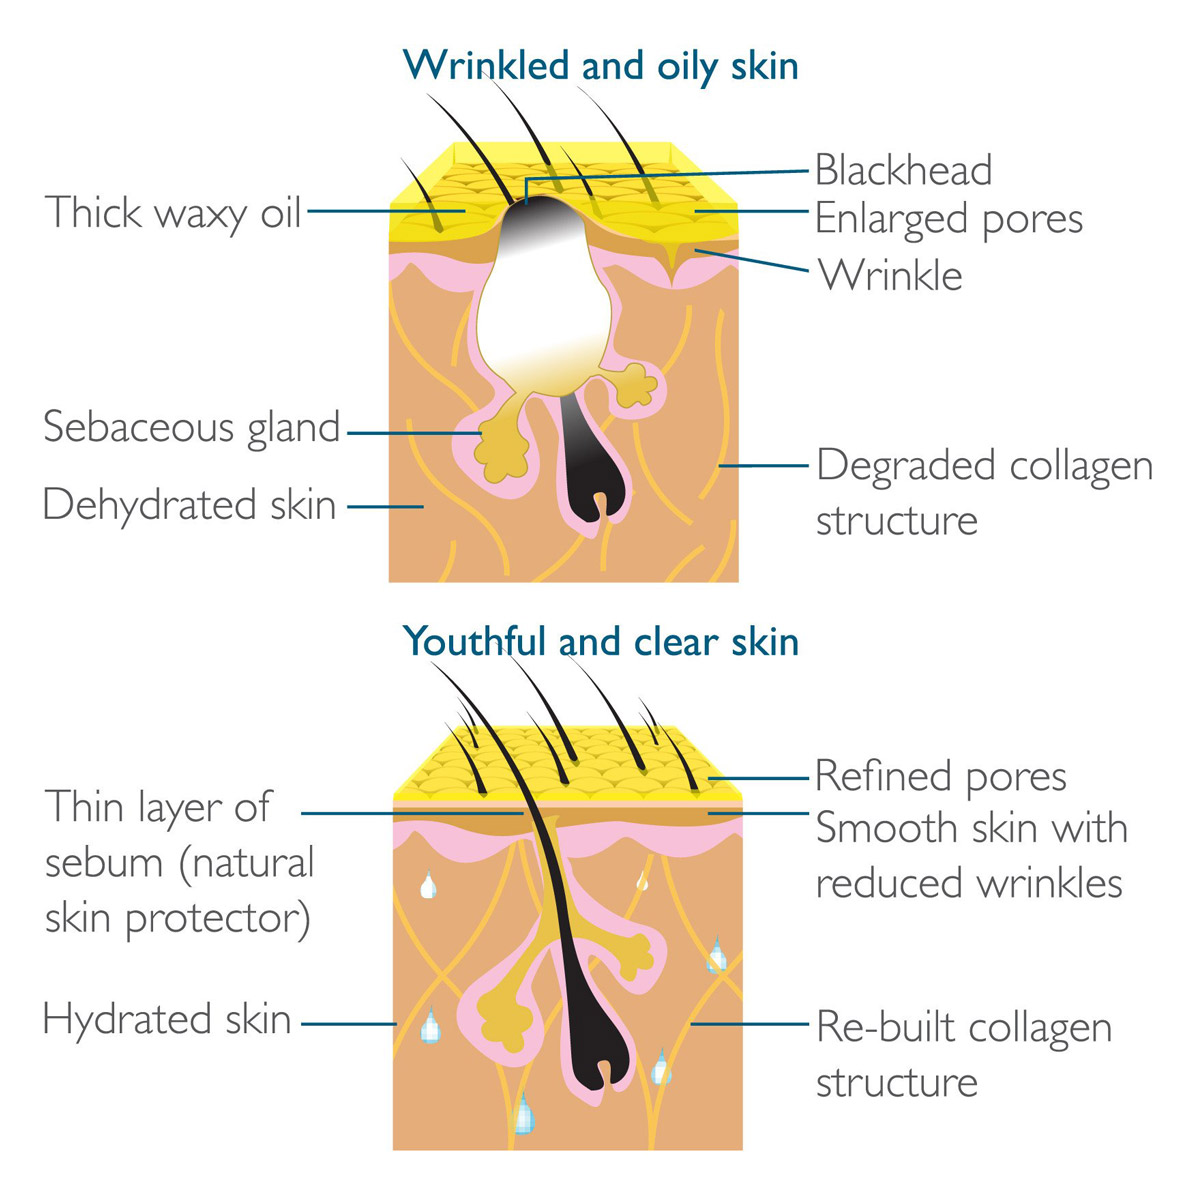 Nước Uống Kinohimitsu Collagen Men Drink chứa 5300mg Collagen Peptide và các thành phần dưỡng ẩm tuyệt vời giúp tăng cường sự đàn hồi, làm mịn các nếp nhăn, hỗ trợ điều tiết tiết bã nhờn, thúc đẩy làm lành các vết sẹo trên khuôn mặt và phục hồi sức sống trẻ trung cho làn da.